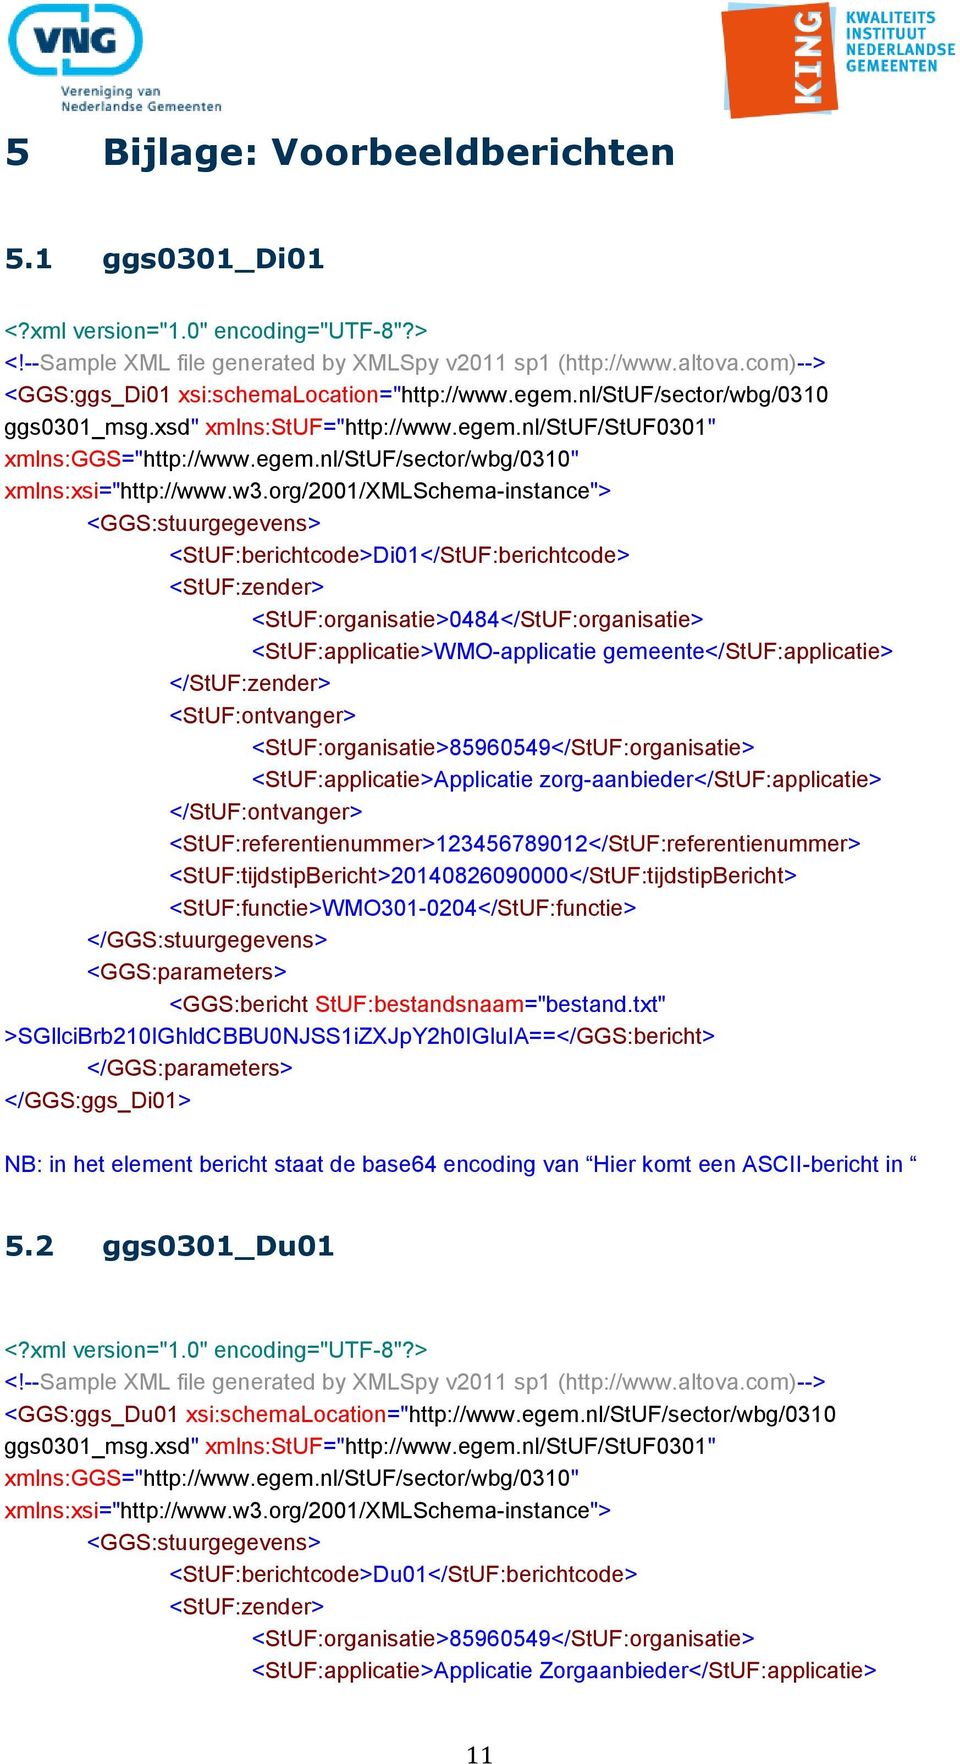 w3.org/2001/xmlschema-instance"> <GGS:stuurgegevens> <StUF:berichtcode>Di01</StUF:berichtcode> <StUF:zender> <StUF:organisatie>0484</StUF:organisatie> <StUF:applicatie>WMO-applicatie